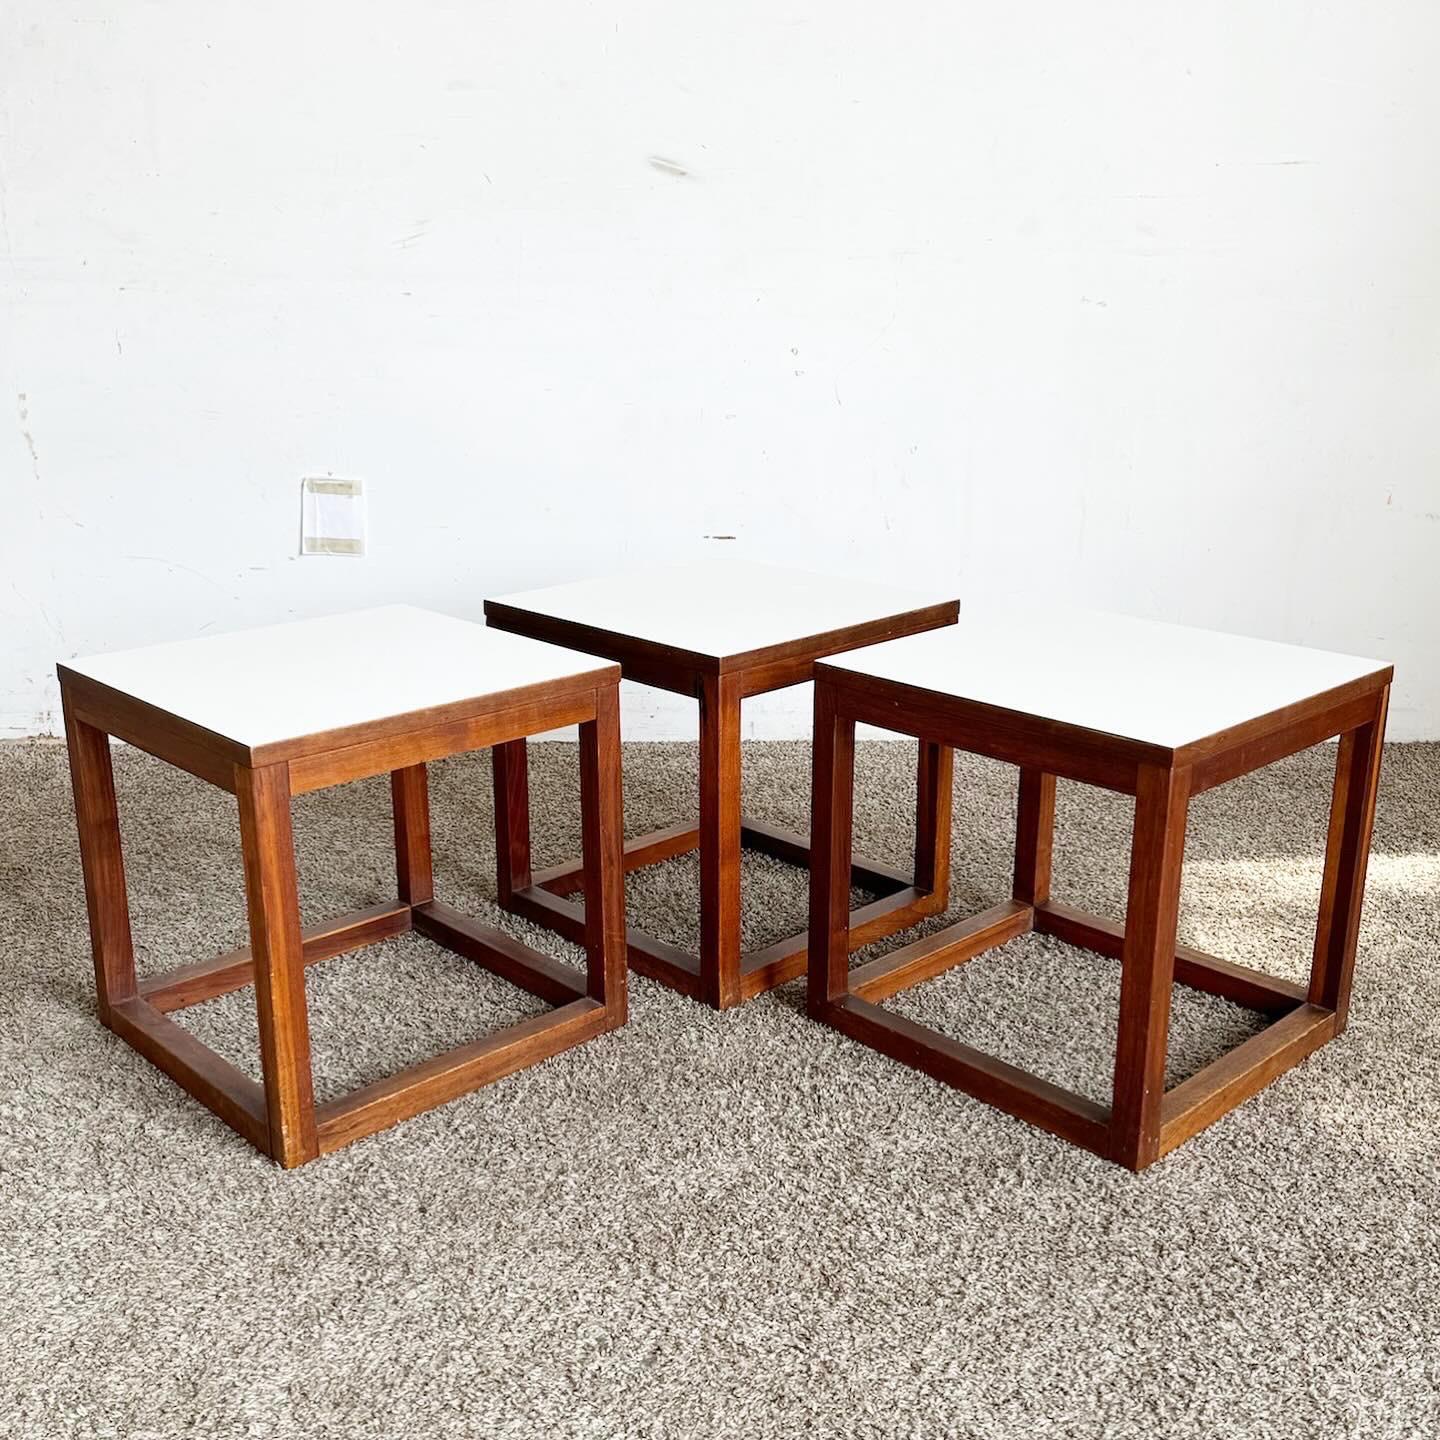 Die Mid Century Modern Teak Cubic Side Tables - 3er-Set fangen die Essenz des Mid-Century-Designs ein. Die Tische aus langlebigem Teakholz mit schöner Maserung zeichnen sich durch klare geometrische Linien und eine minimalistische kubische Form aus.